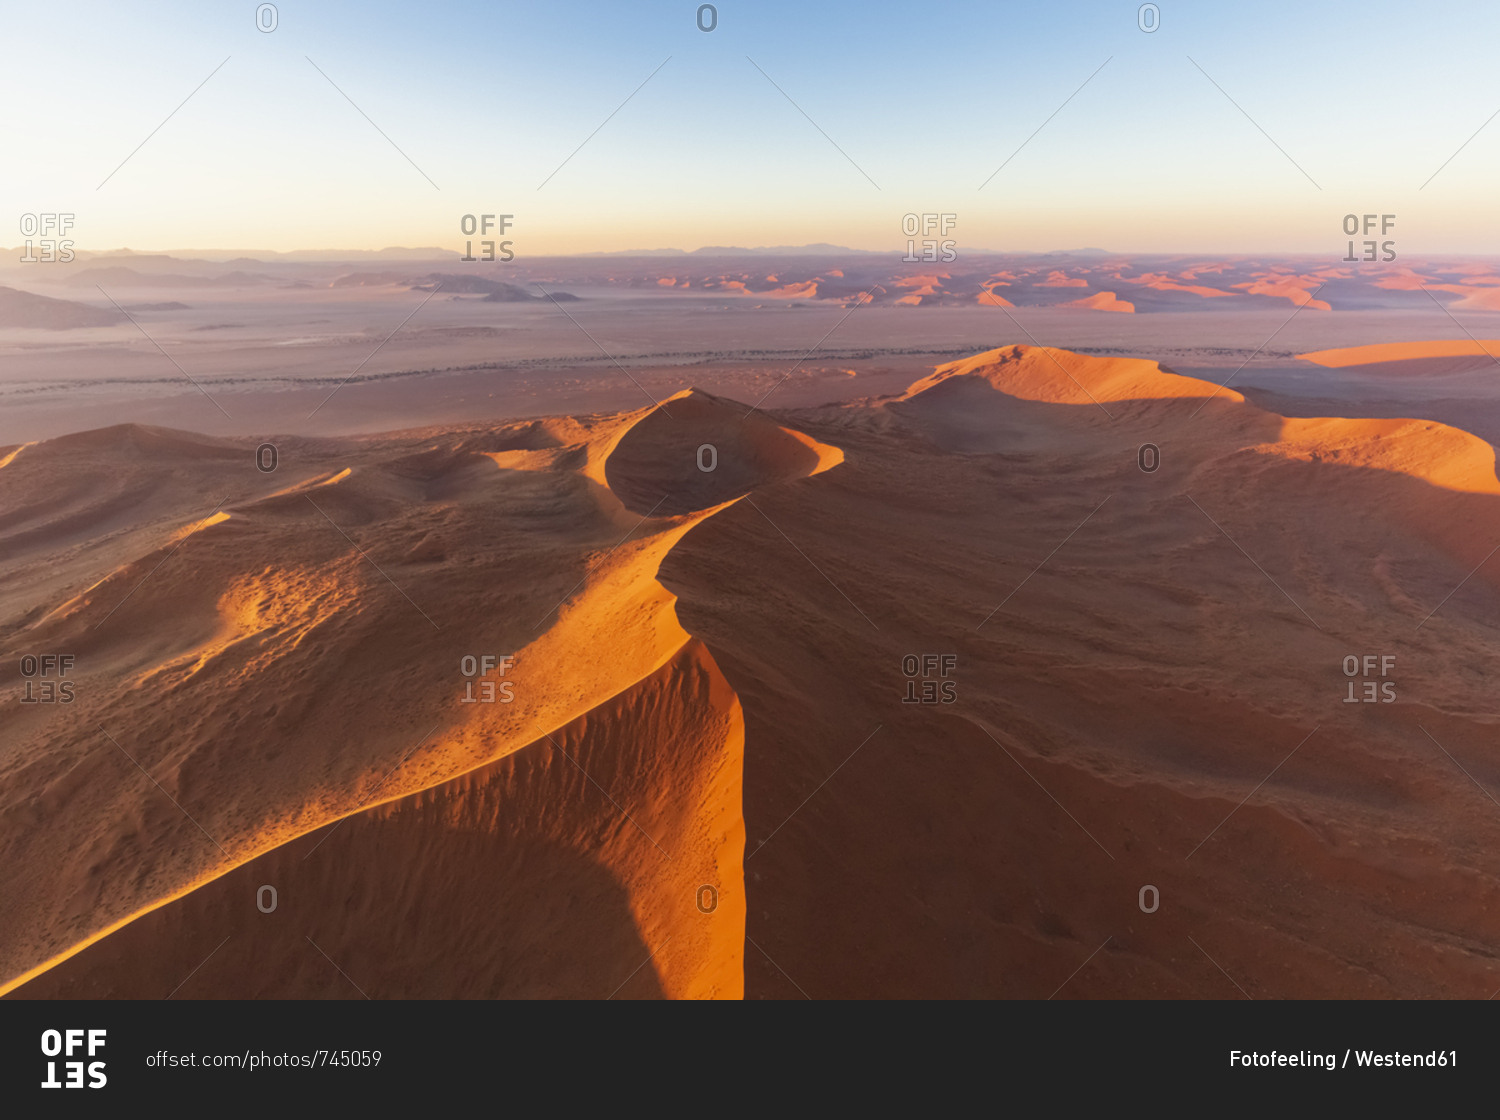 Africa- Namibia- Namib desert- Namib-Naukluft National Park- Aerial view of desert dunes in the morning light